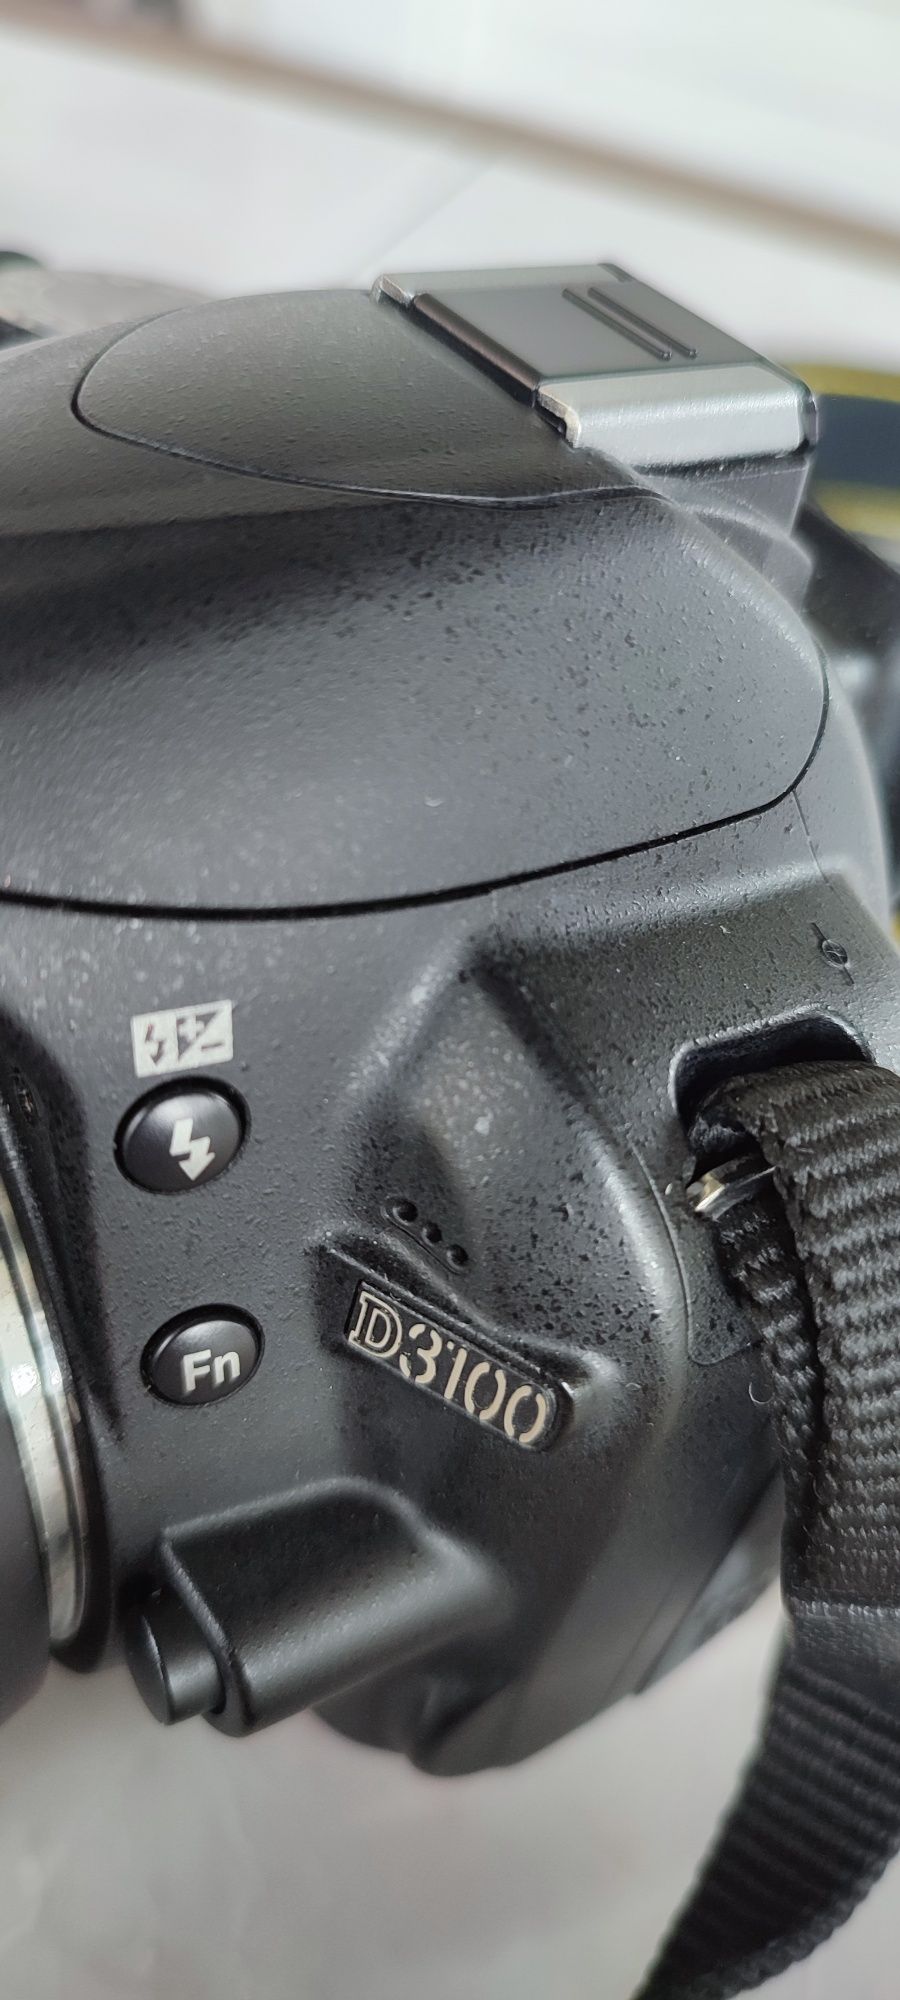 Фотоапарат Nikon D 3100 як новий